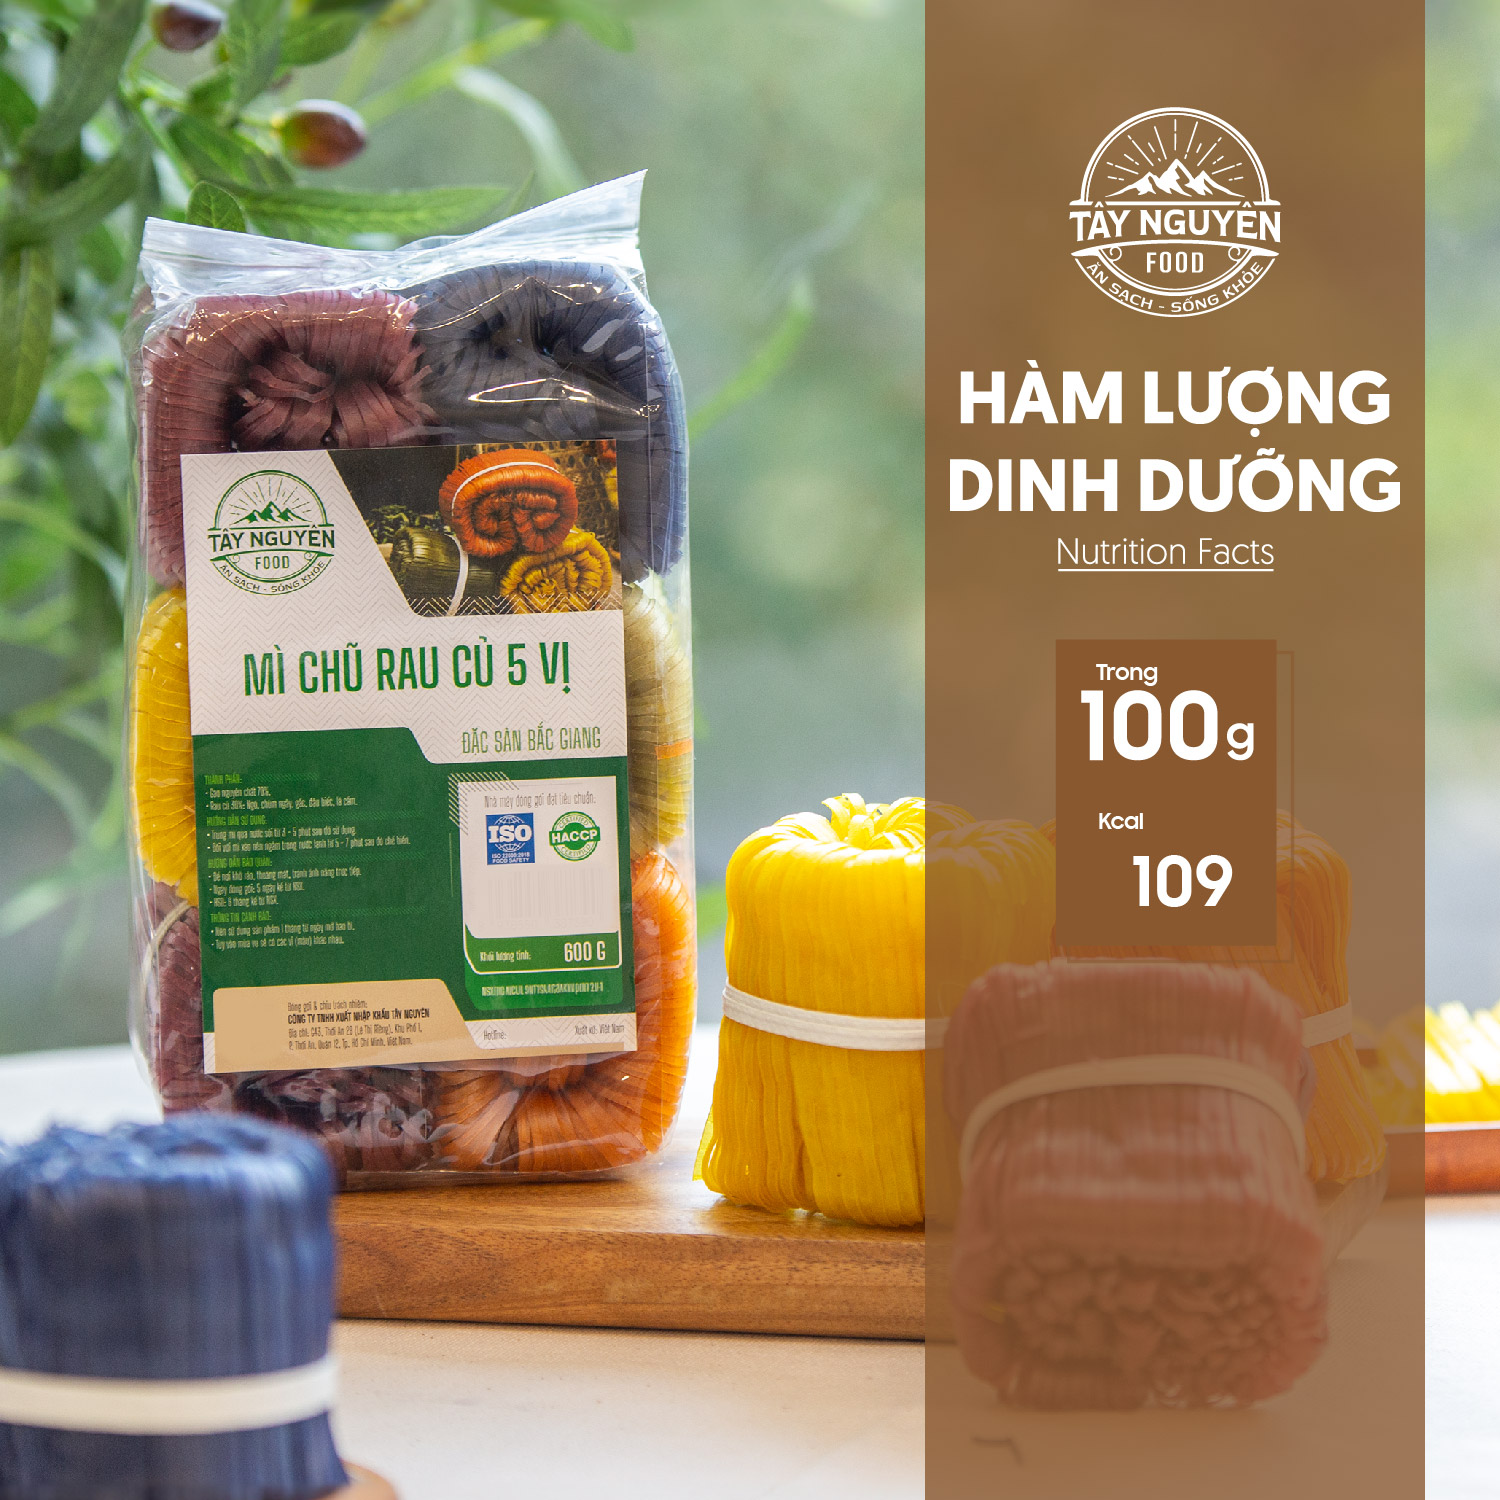 Mỳ chũ rau củ 5 vị 600g healthy đặc sản Bắc Giang Tây Nguyên Food